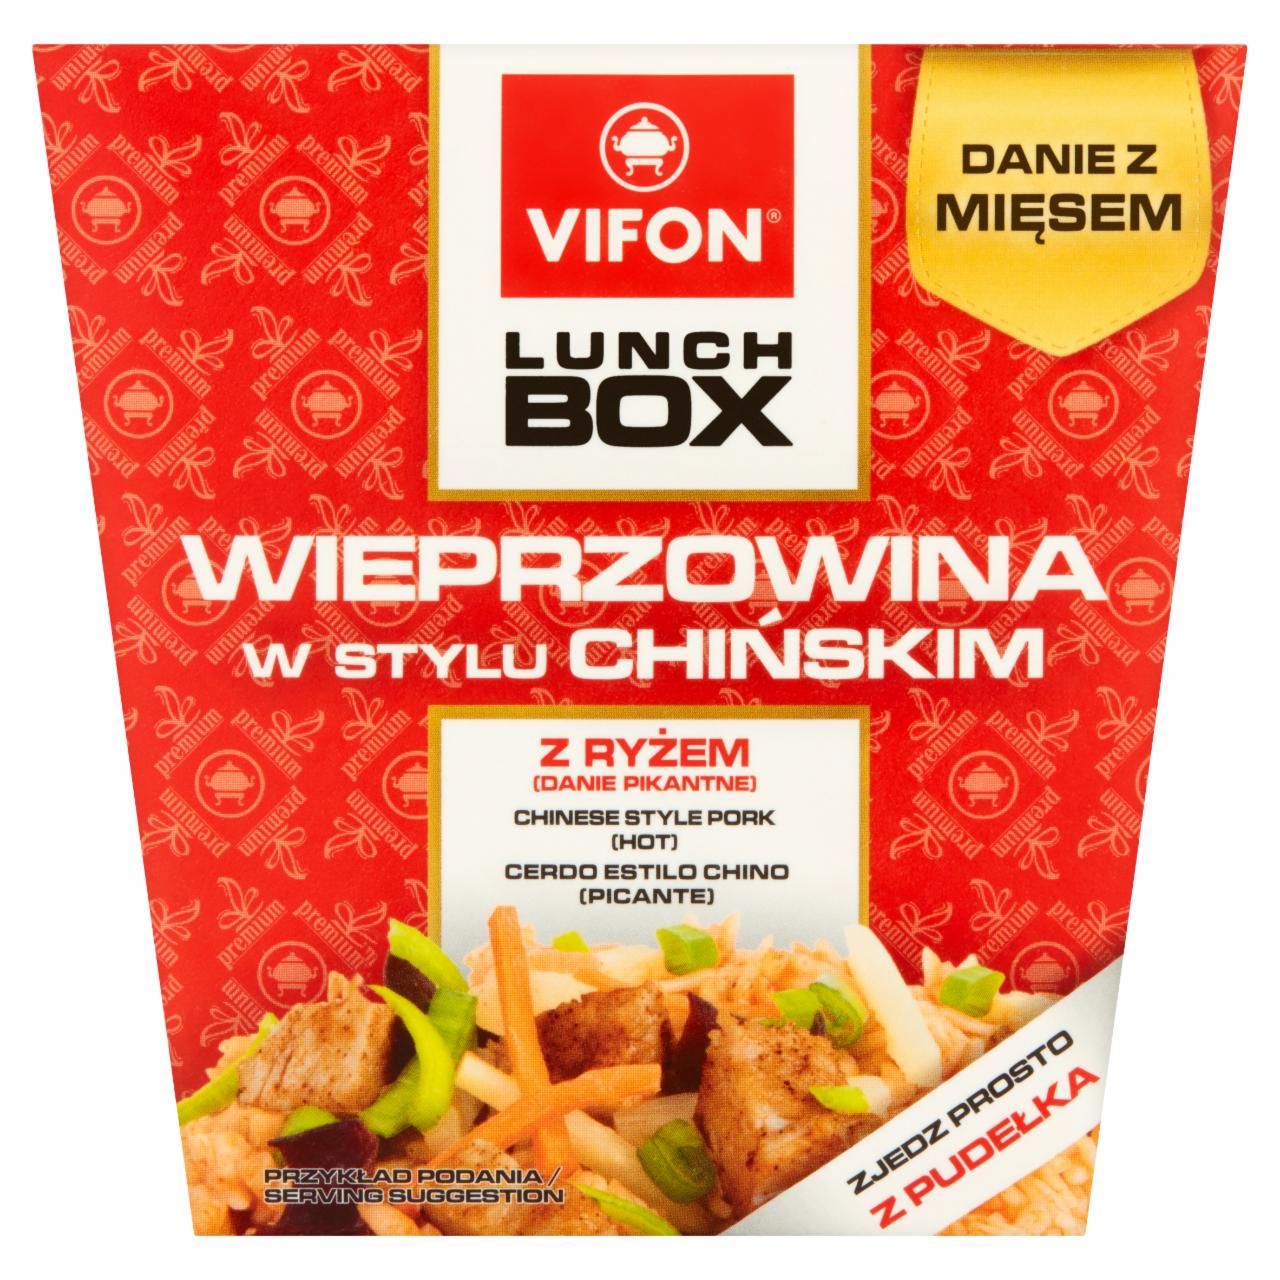 Zdjęcia - Vifon Lunch Box Danie błyskawiczne wieprzowina w stylu chińskim 175 g